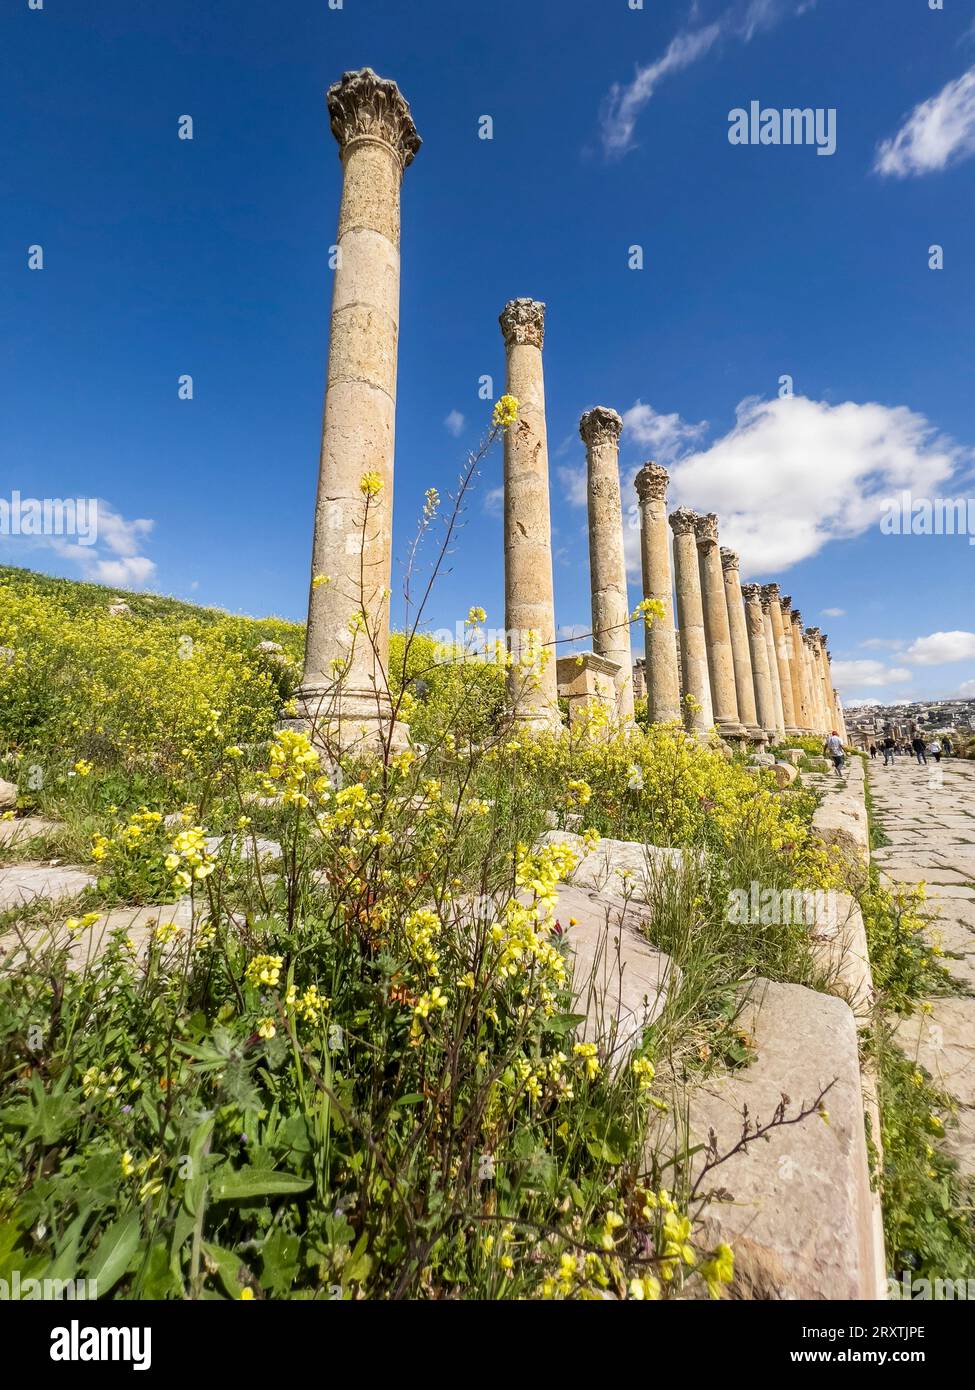 Fiori davanti alle colonne nell'antica città di Jerash, che si ritiene sia stata fondata nel 331 a.C. da Alessandro Magno, Jerash, Giordania, Medio Oriente Foto Stock